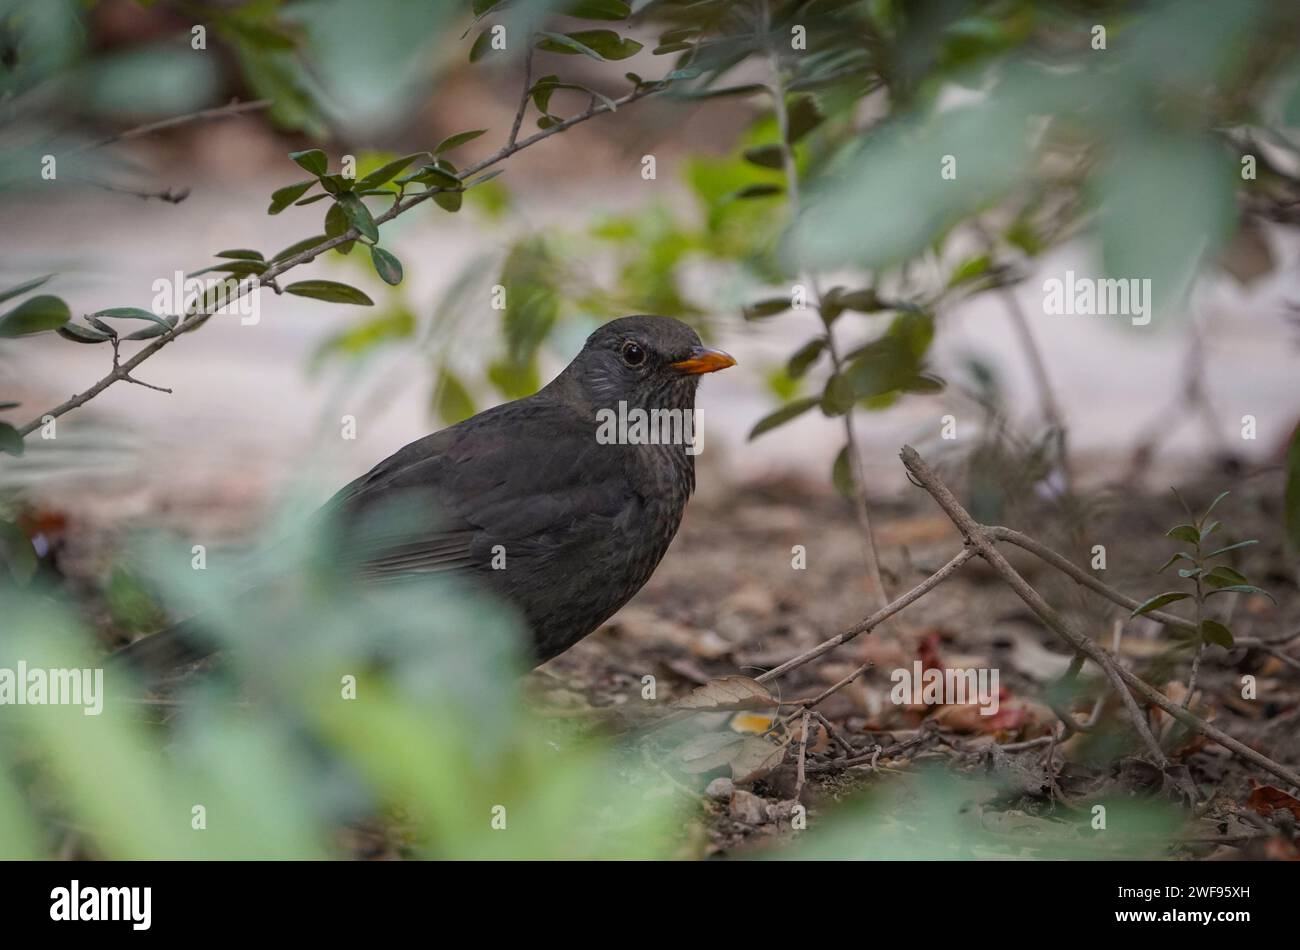 Blackbird à la recherche d'insectes dans les feuilles dans le jardin. Espagne. Banque D'Images